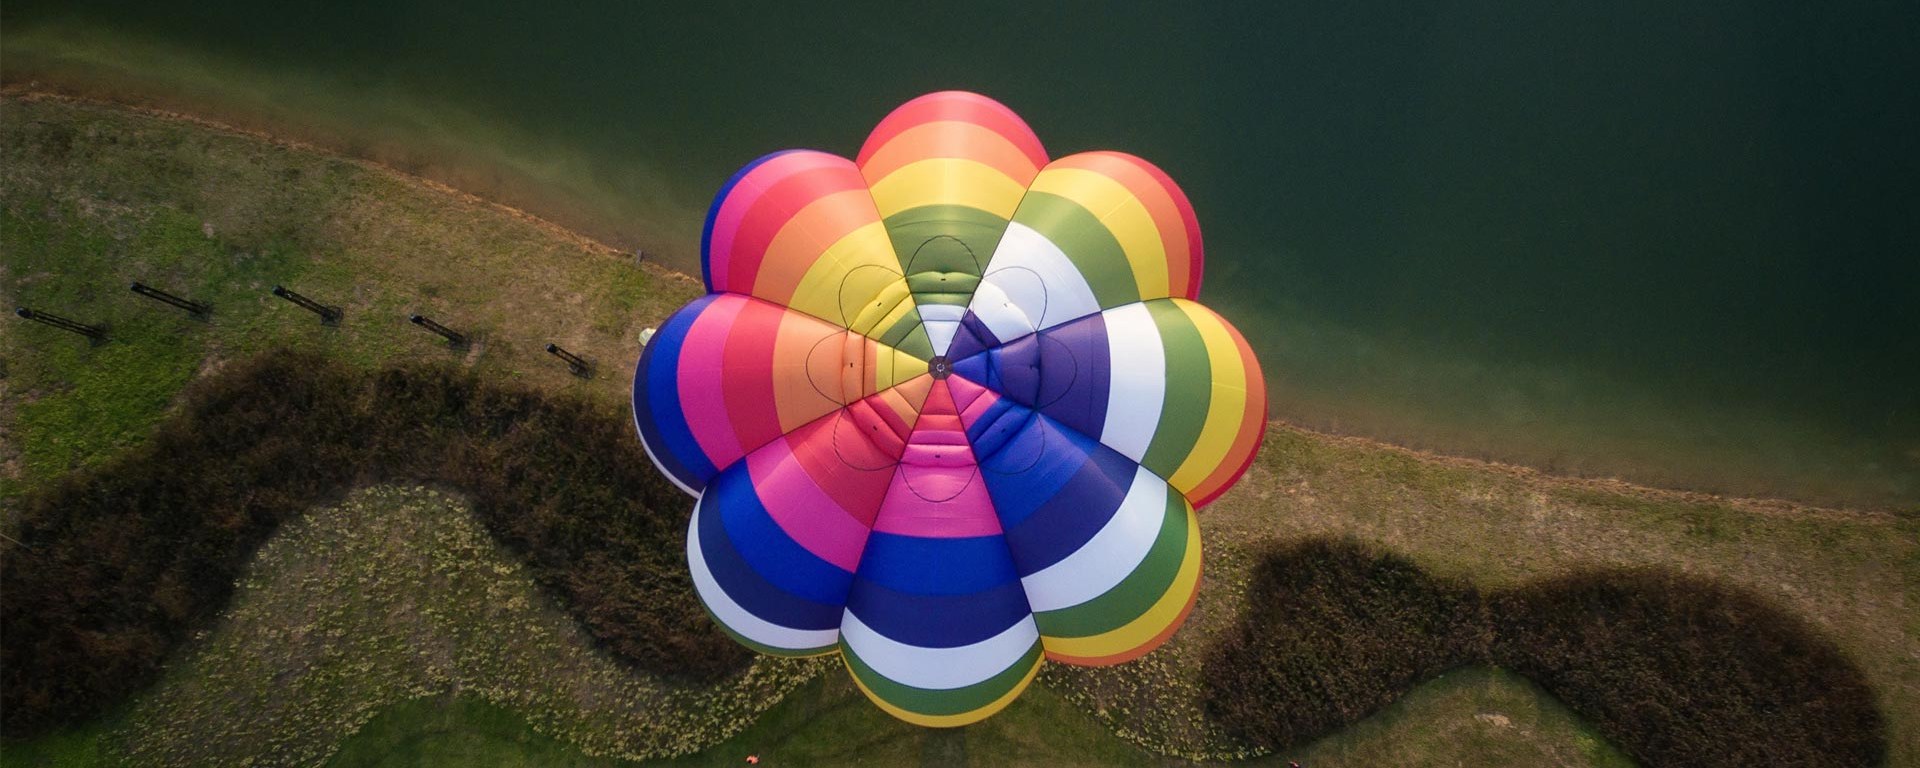 Un ballon à air chaud coloré vole au-dessus d'un pré - en perspective aérienne.